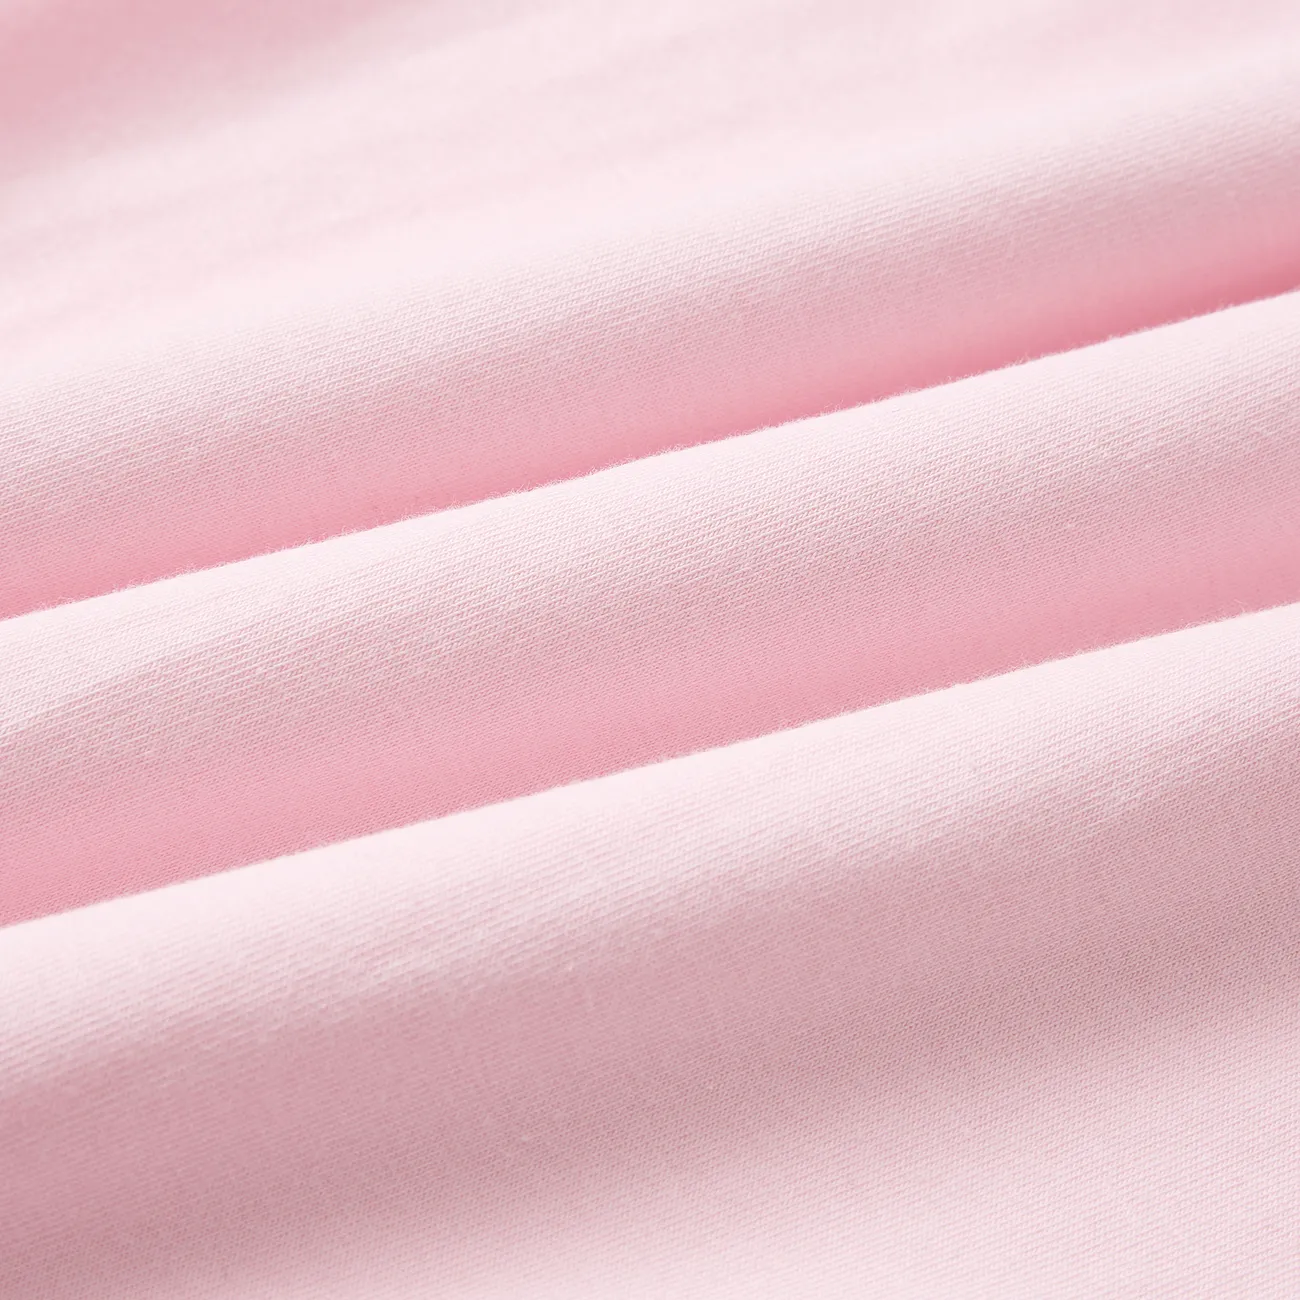 Barbie Toddler/Kid Girl Back Bowknot Design Cotton Short-sleeve Dress Light Pink big image 1